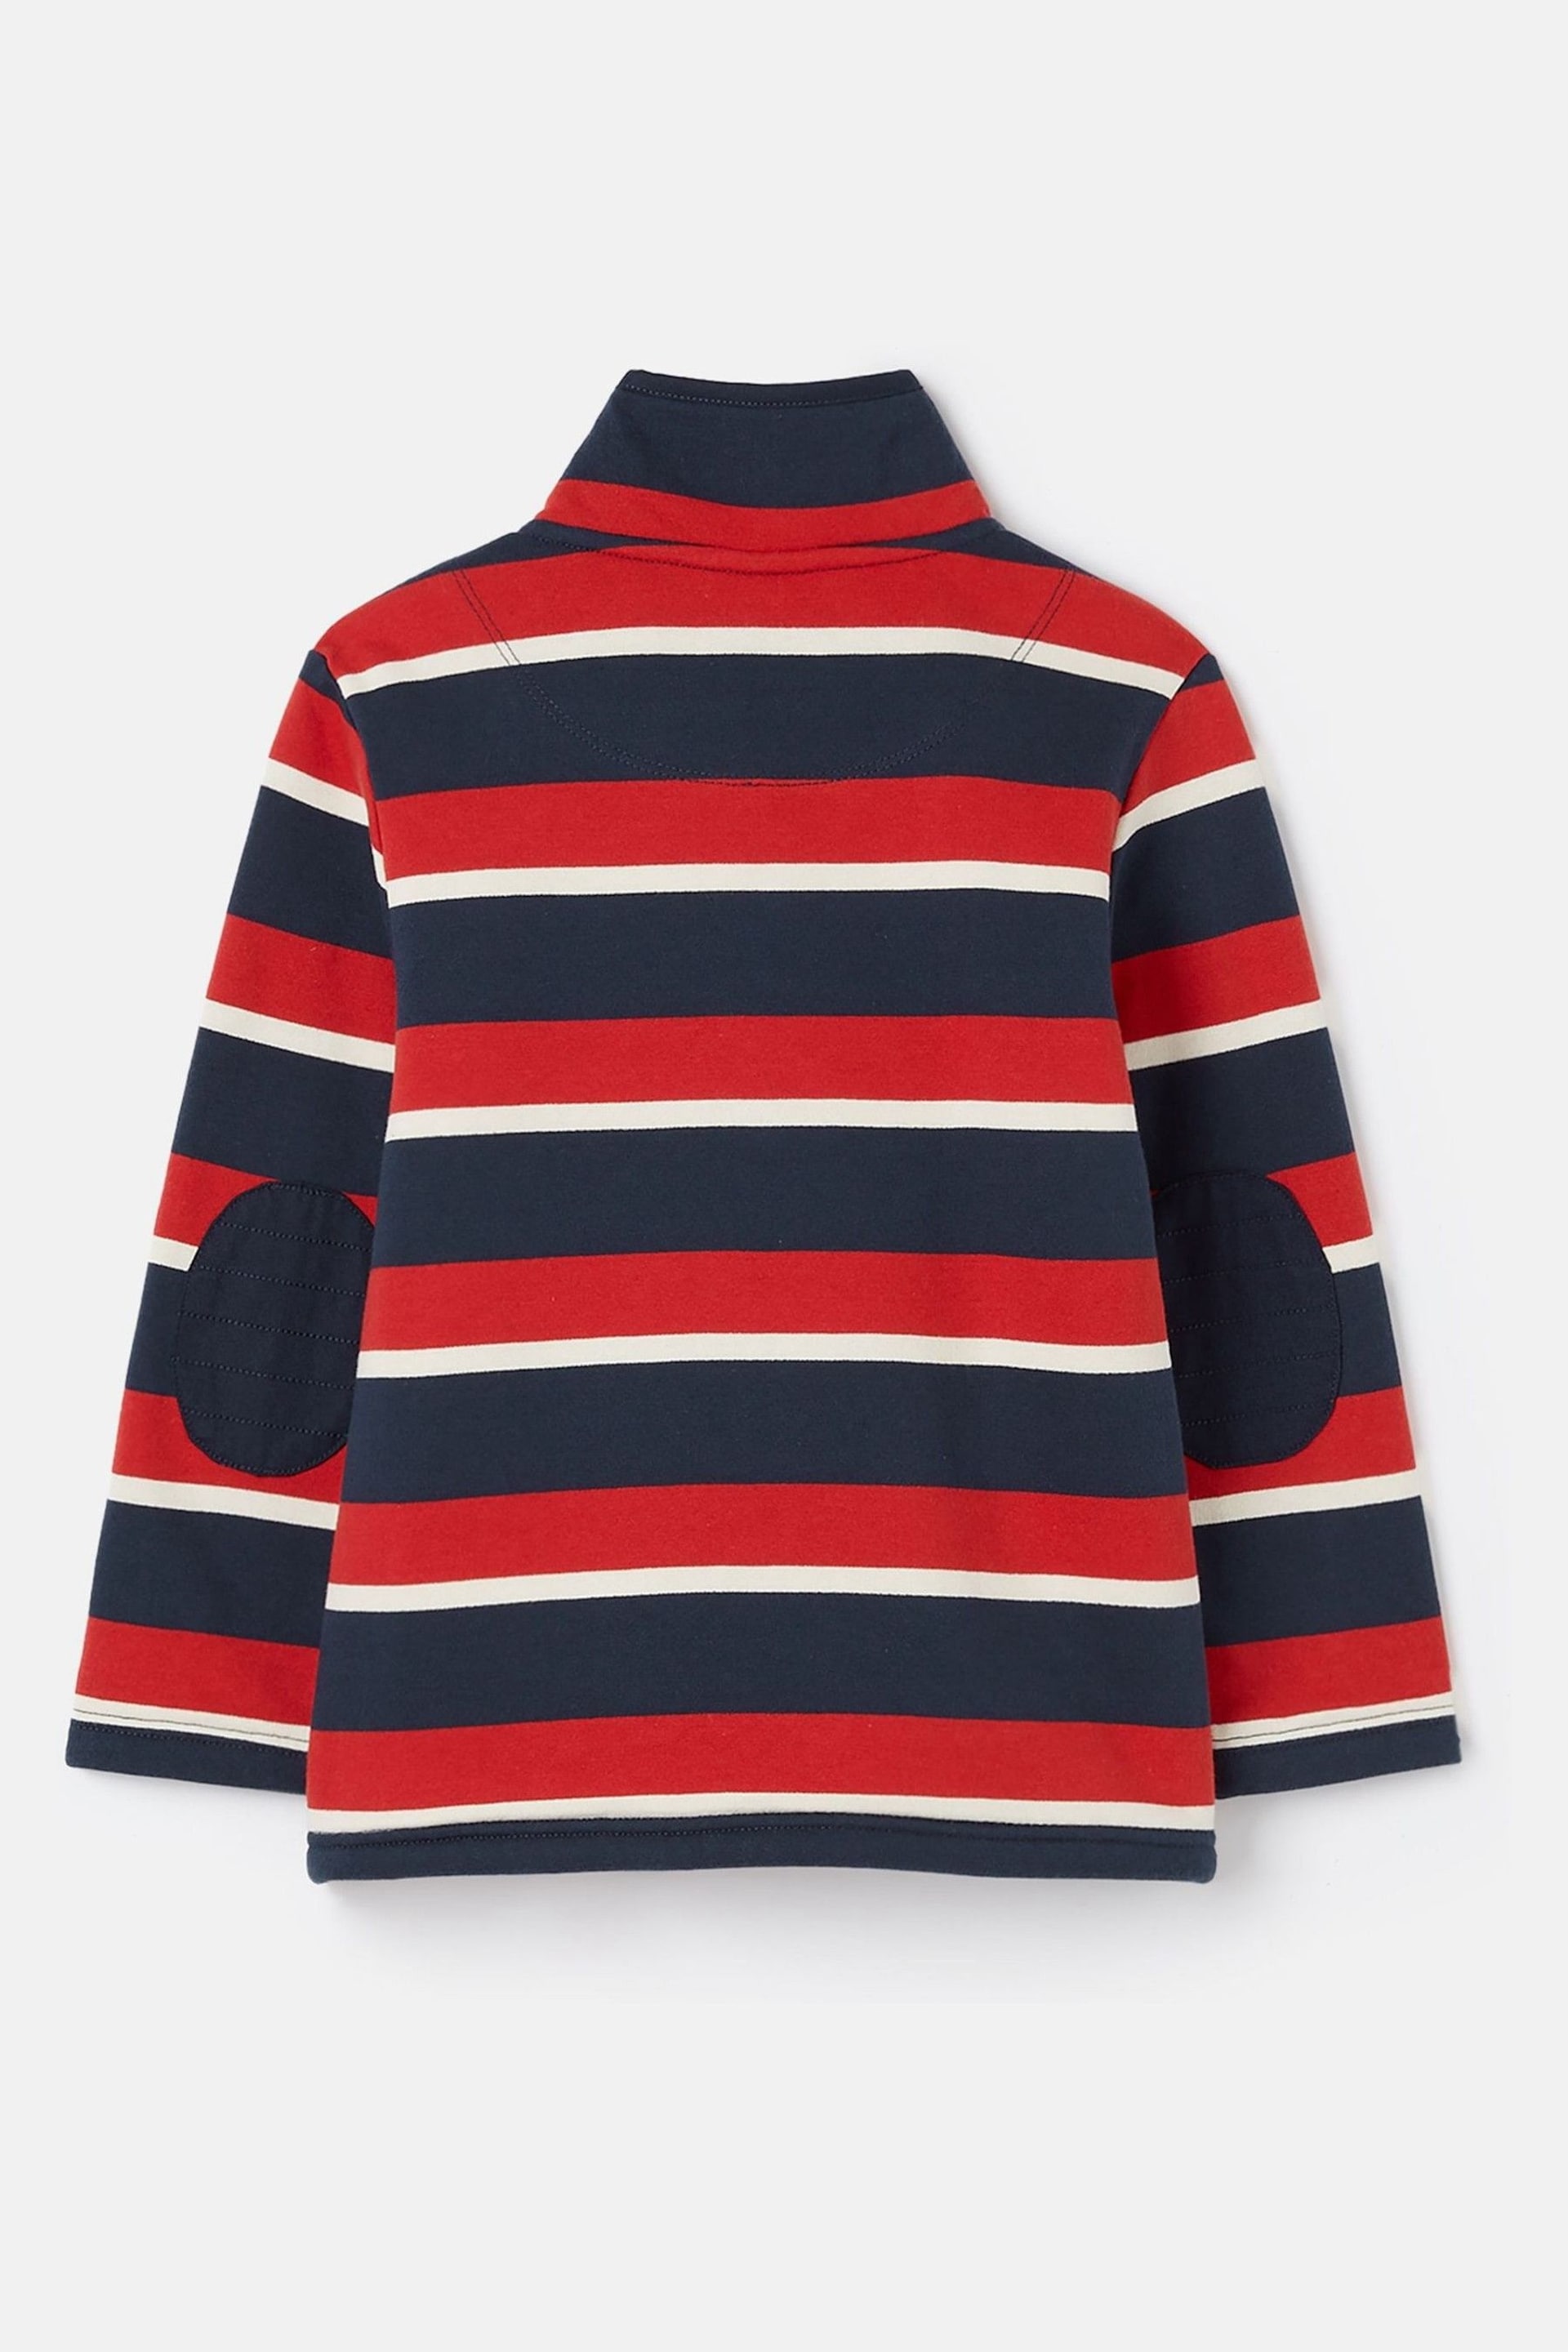 Joules Winter Dale Red/Navy Quarter Zip Sweatshirt with Fleece Lining - Image 2 of 6